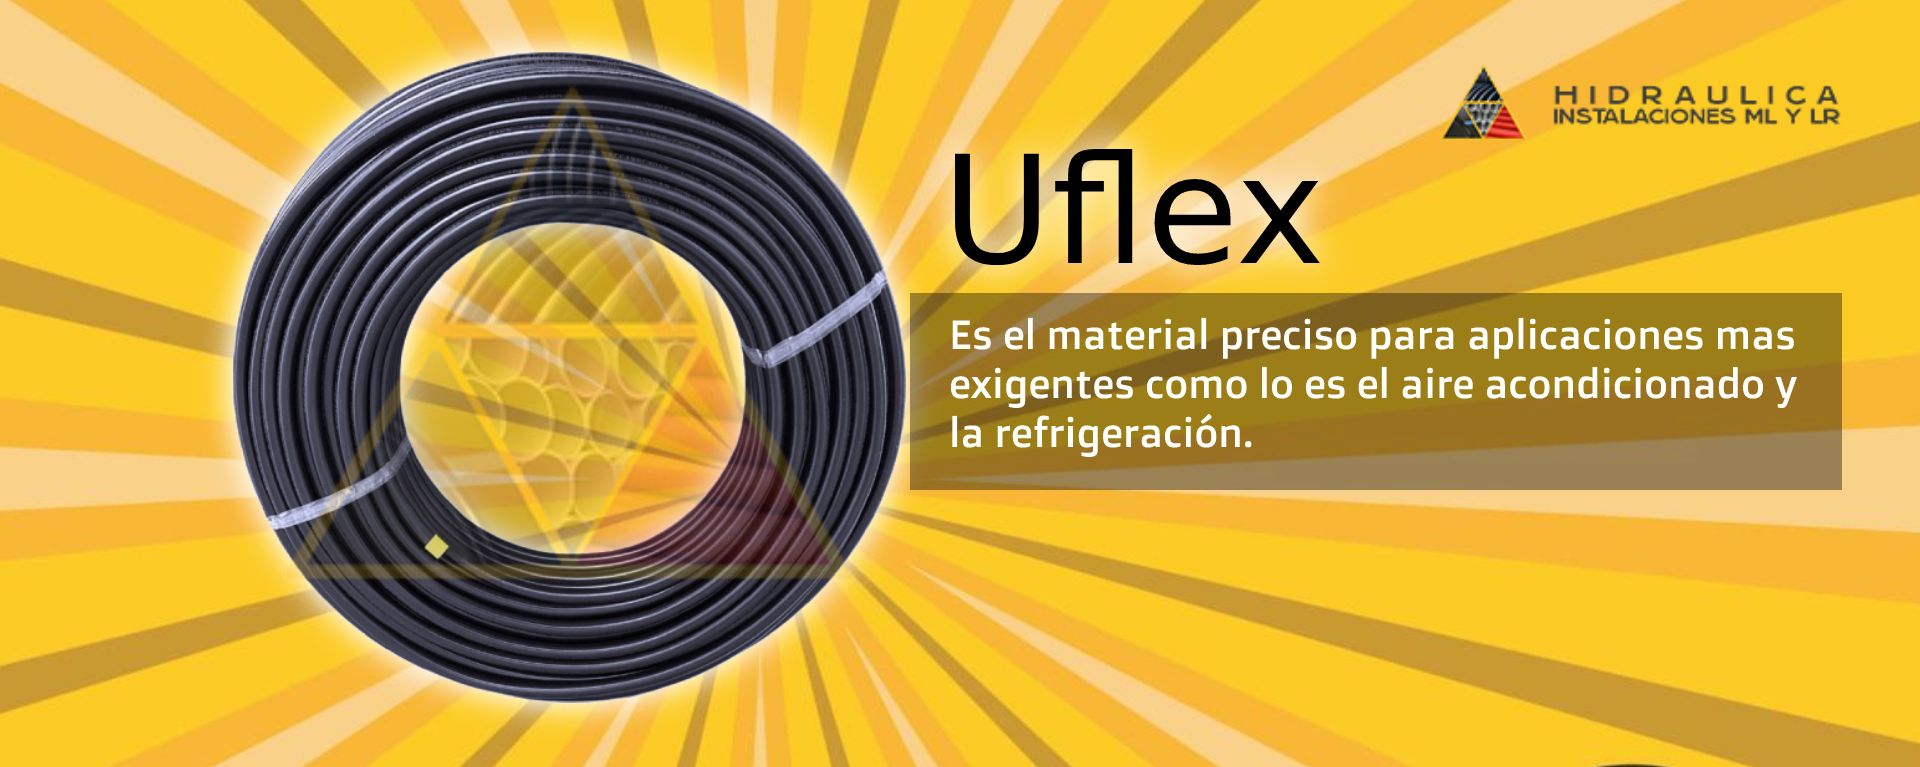 Tubo Uflex Para Aire Acondicionado Y Refrigeracion Hidraulica Instalaciones Ml Y Lr Uflex